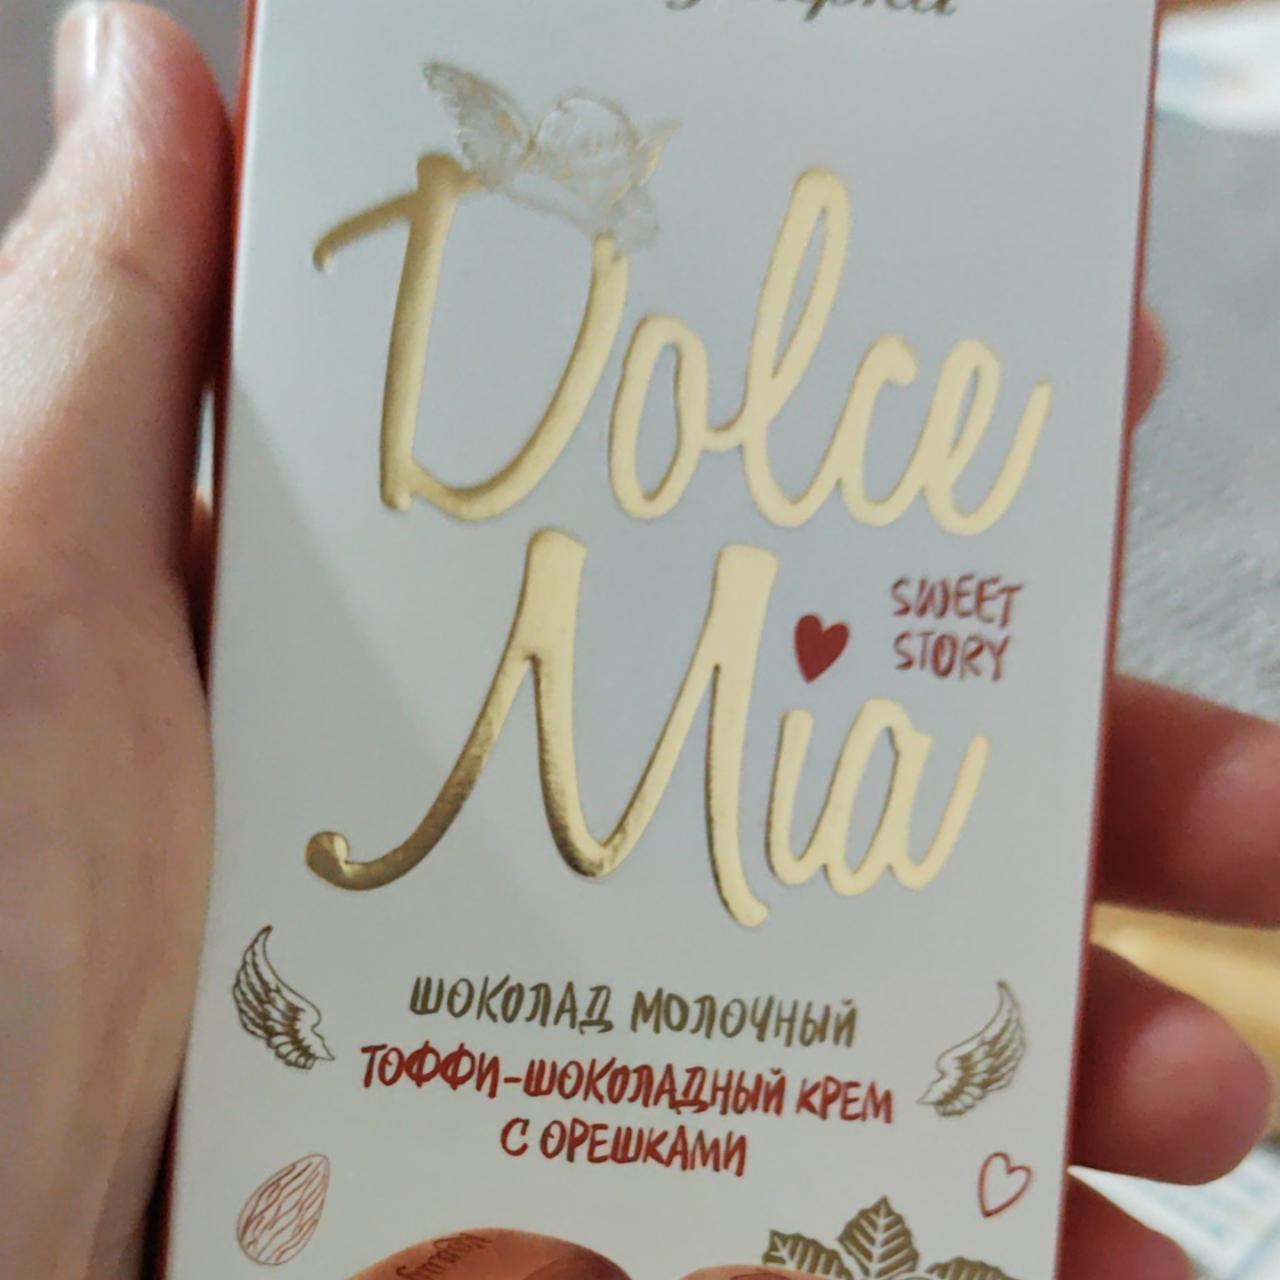 Фото - шоколад молочный тоффи-шоколадный крем с орешками Dolce Mia